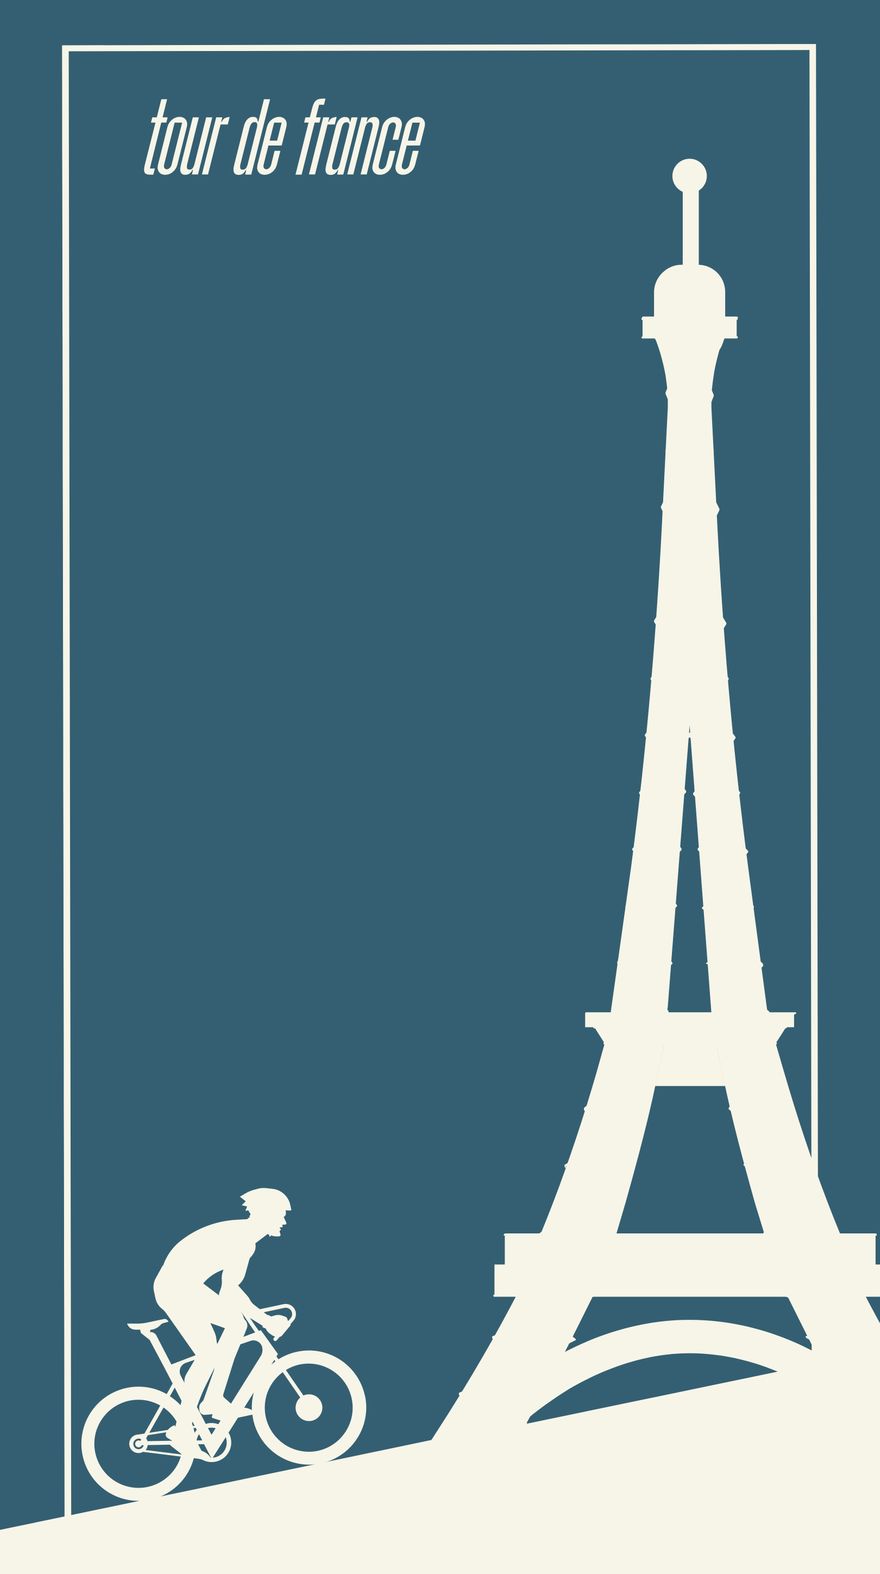 Free Tour de France iPhone Background in PDF, Illustrator, PSD, EPS, SVG, PNG, JPEG